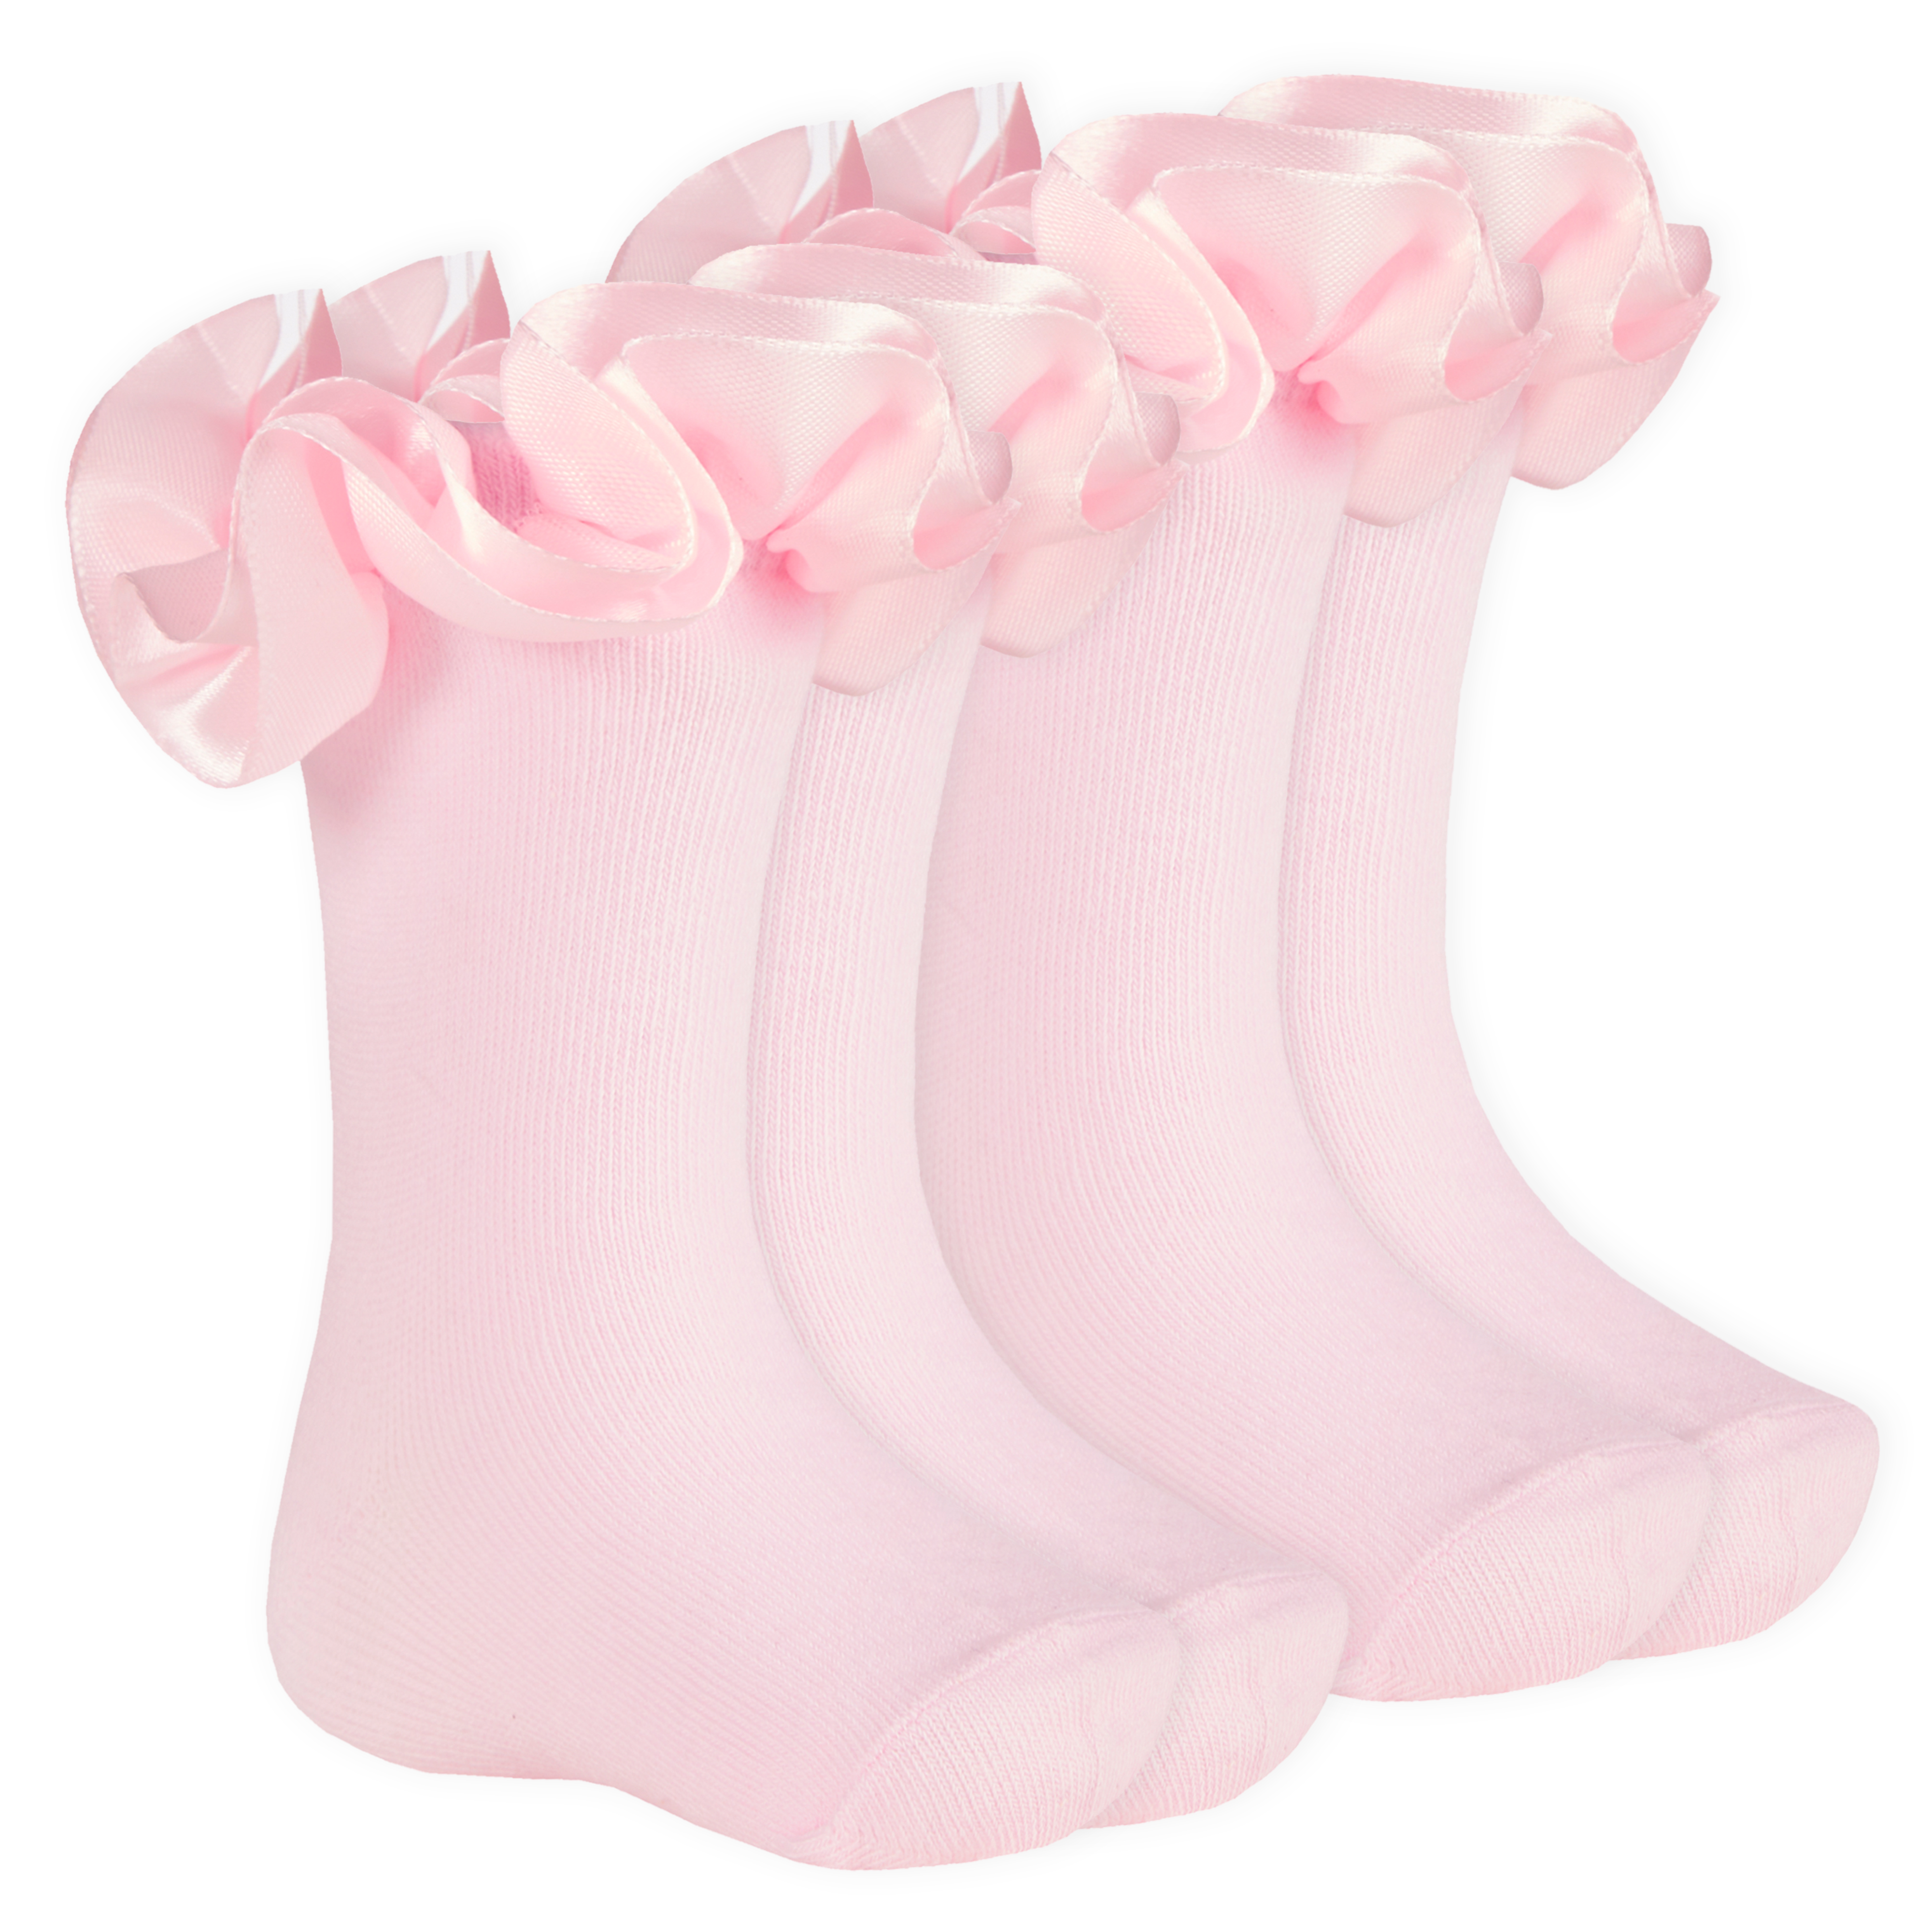 Baby Girls Kids toddlersLace White/Pink Trim Princess Soles Crew Socks 1-12yrs 